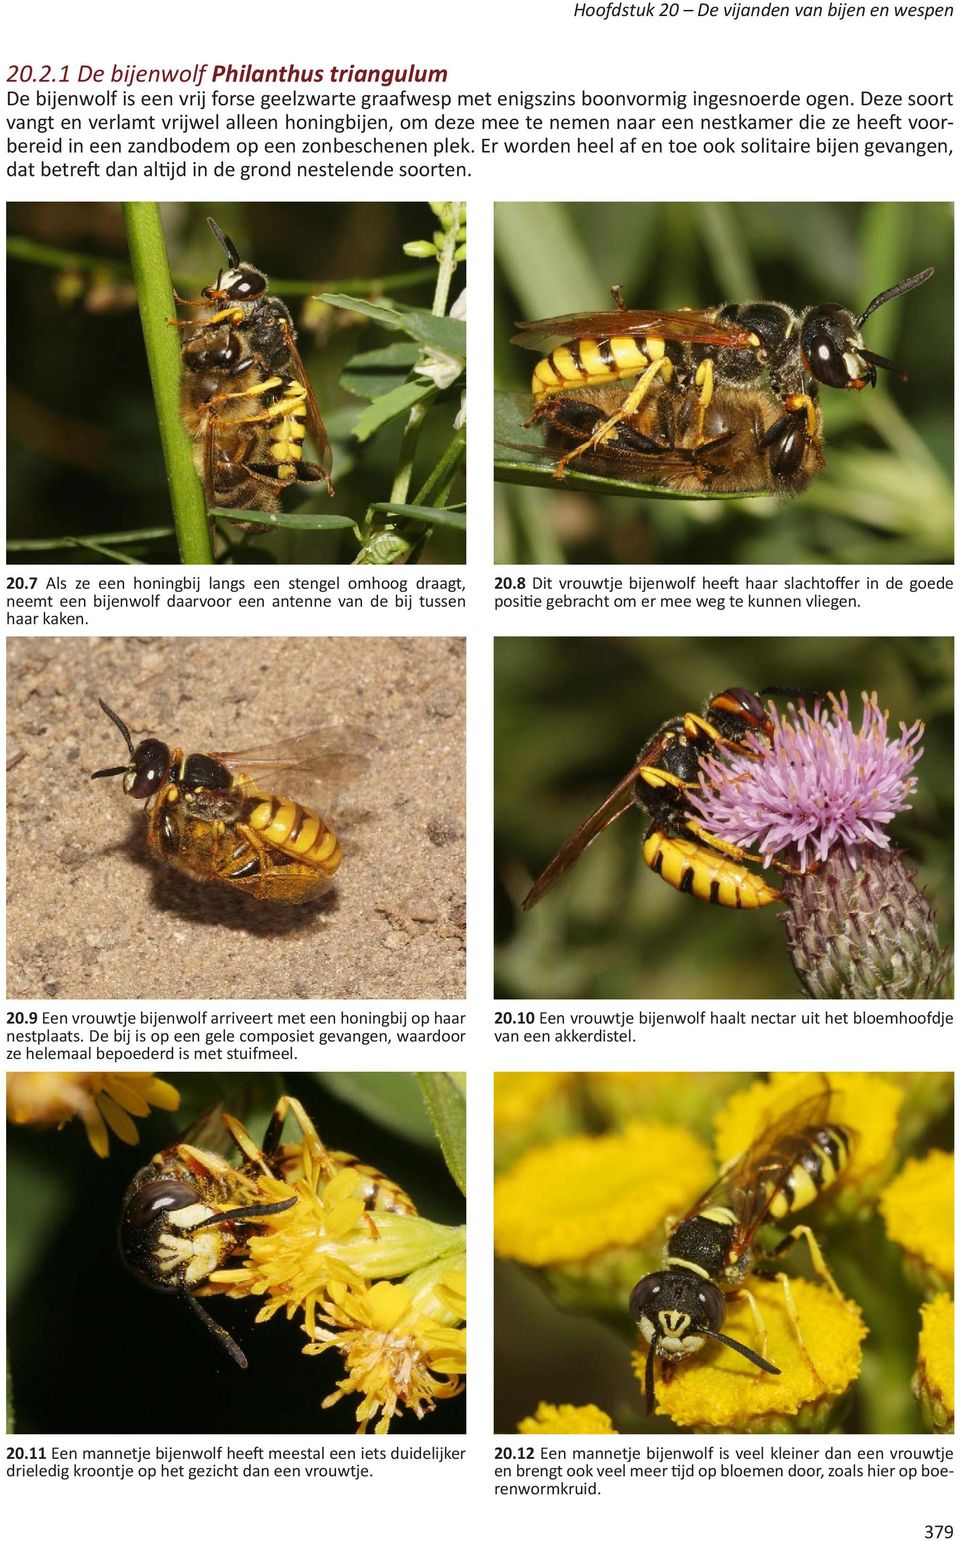 Er worden heel af en toe ook solitaire bijen gevangen, dat betreft dan altijd in de grond nestelende soorten. 20.